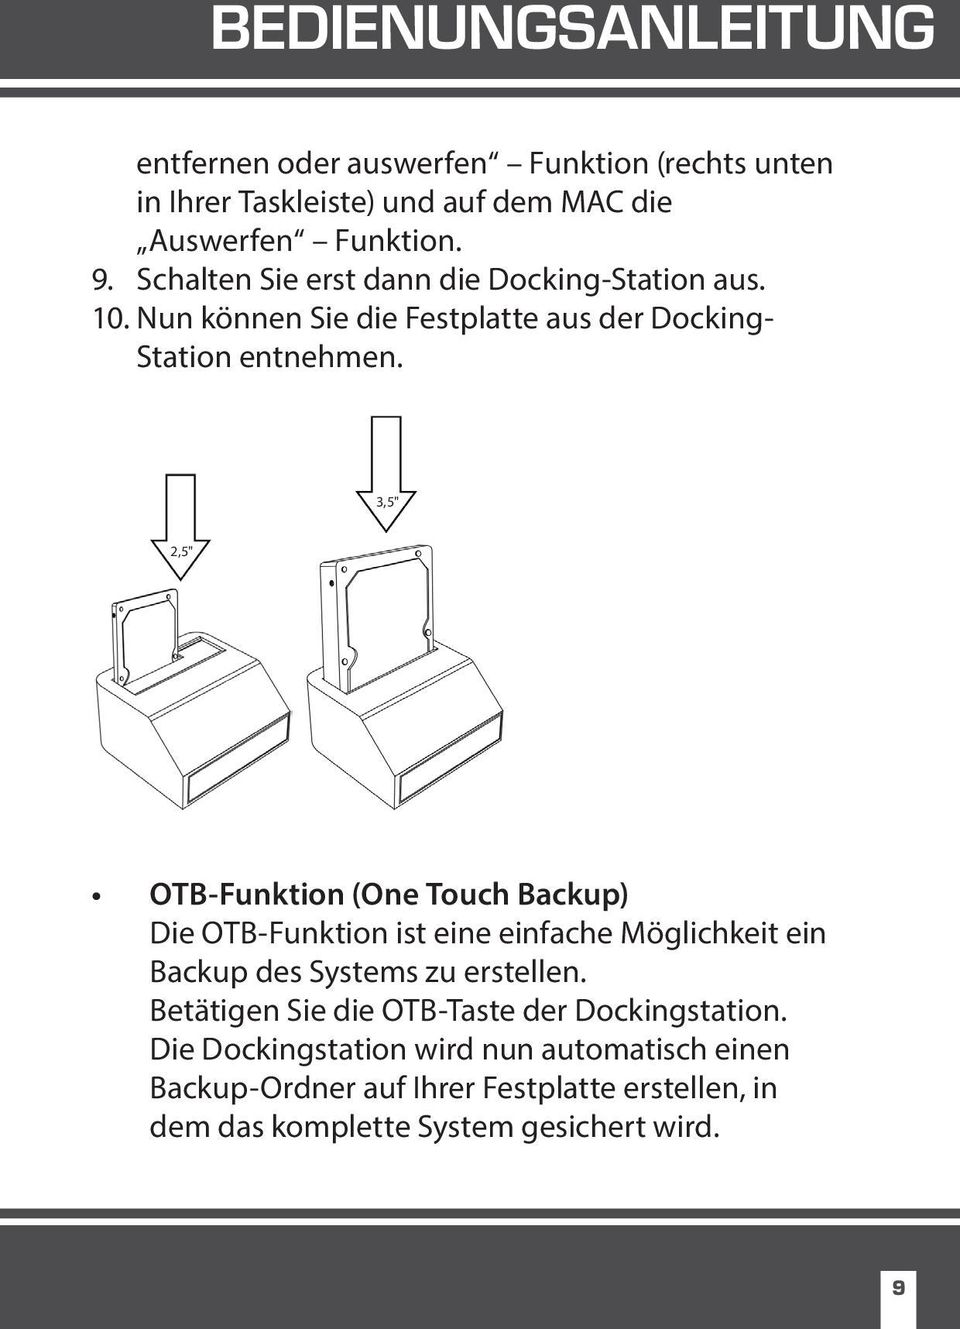 3,5" 2,5" OTB-Funktion (One Touch Backup) Die OTB-Funktion ist eine einfache Möglichkeit ein Backup des Systems zu erstellen.